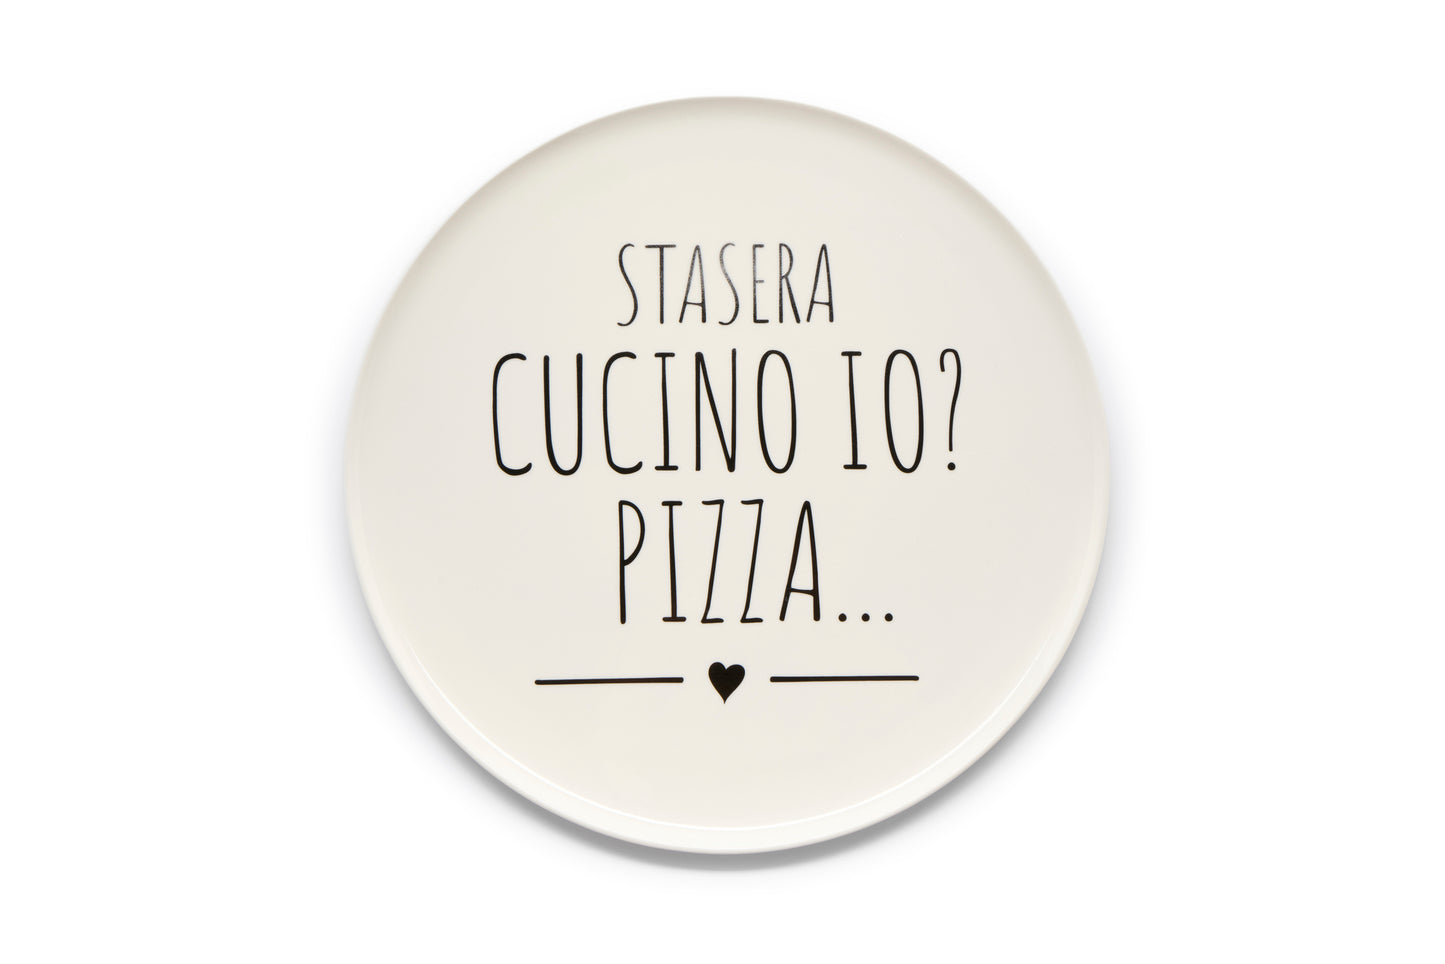 PIATTO PIZZA "STASERA CUCINO IO? PIZZA... "